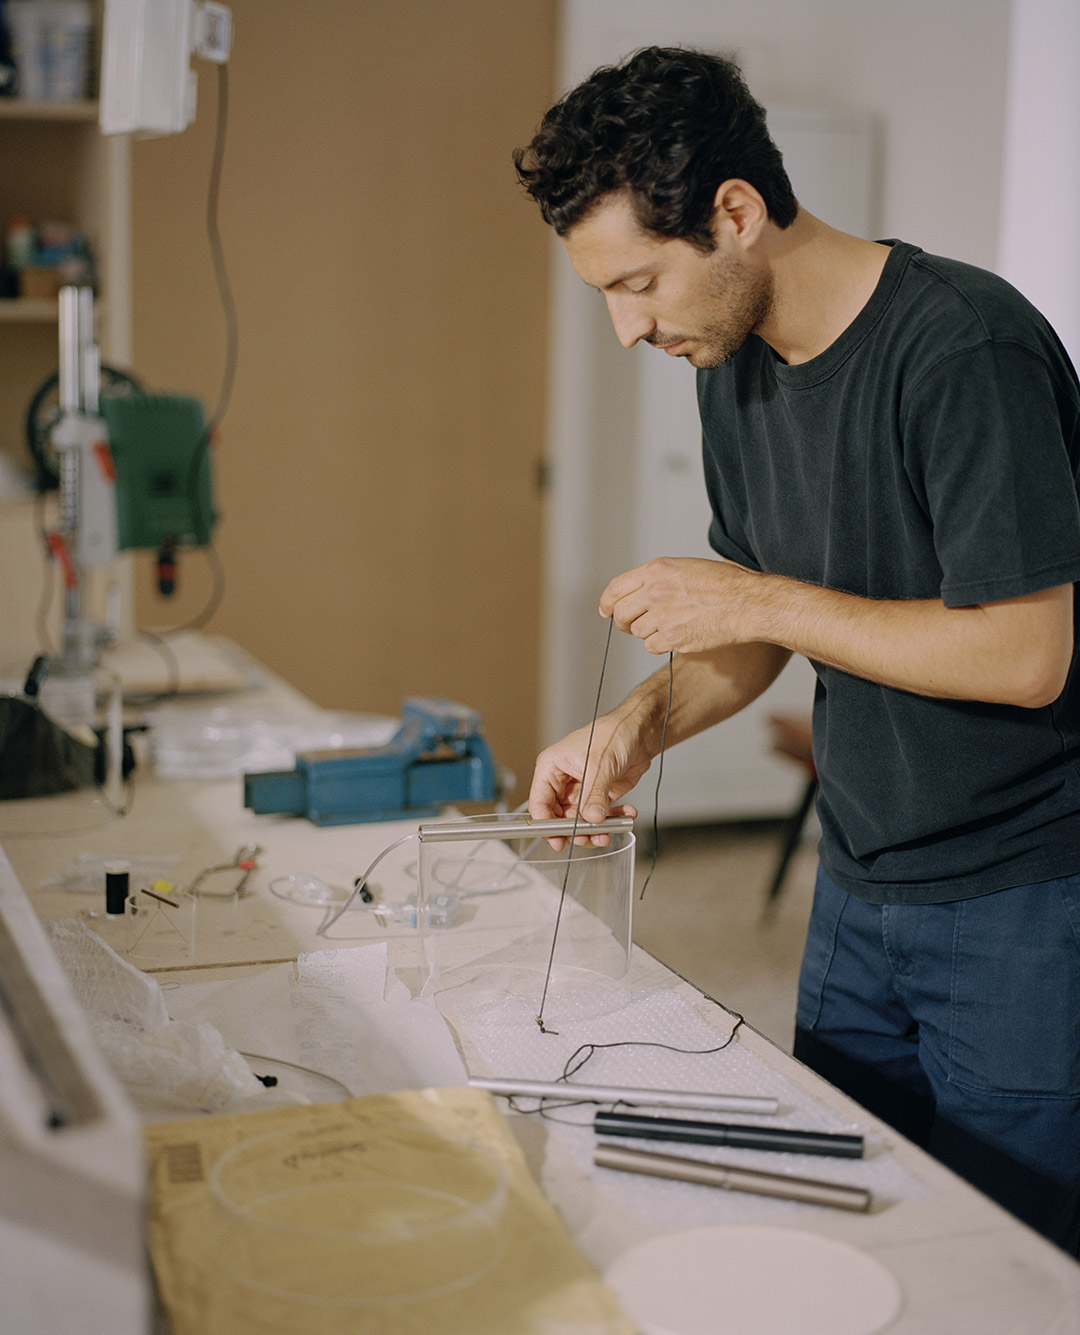 Guglielmo Poletti at work in his studio